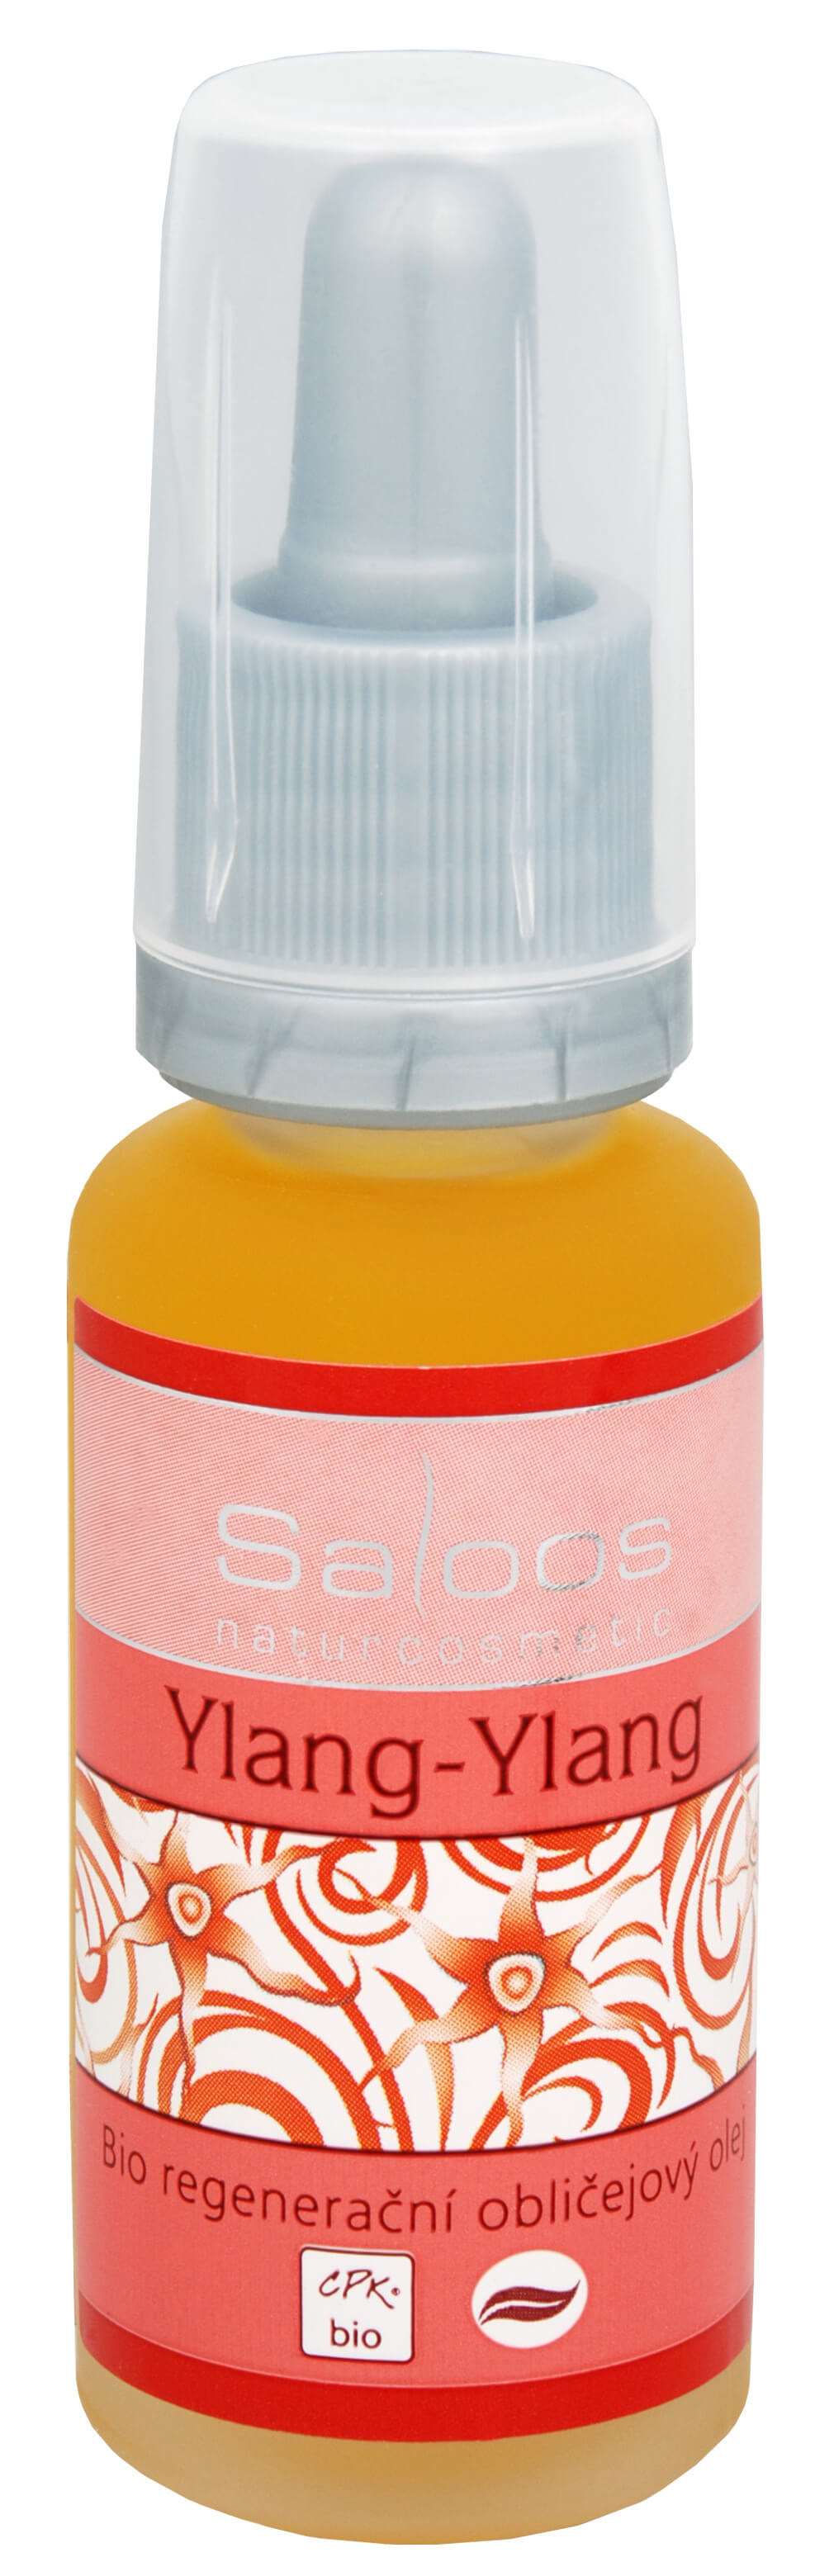 Zobrazit detail výrobku Saloos Bio regenerační obličejový olej - Ylang-ylang 20 ml + 2 měsíce na vrácení zboží